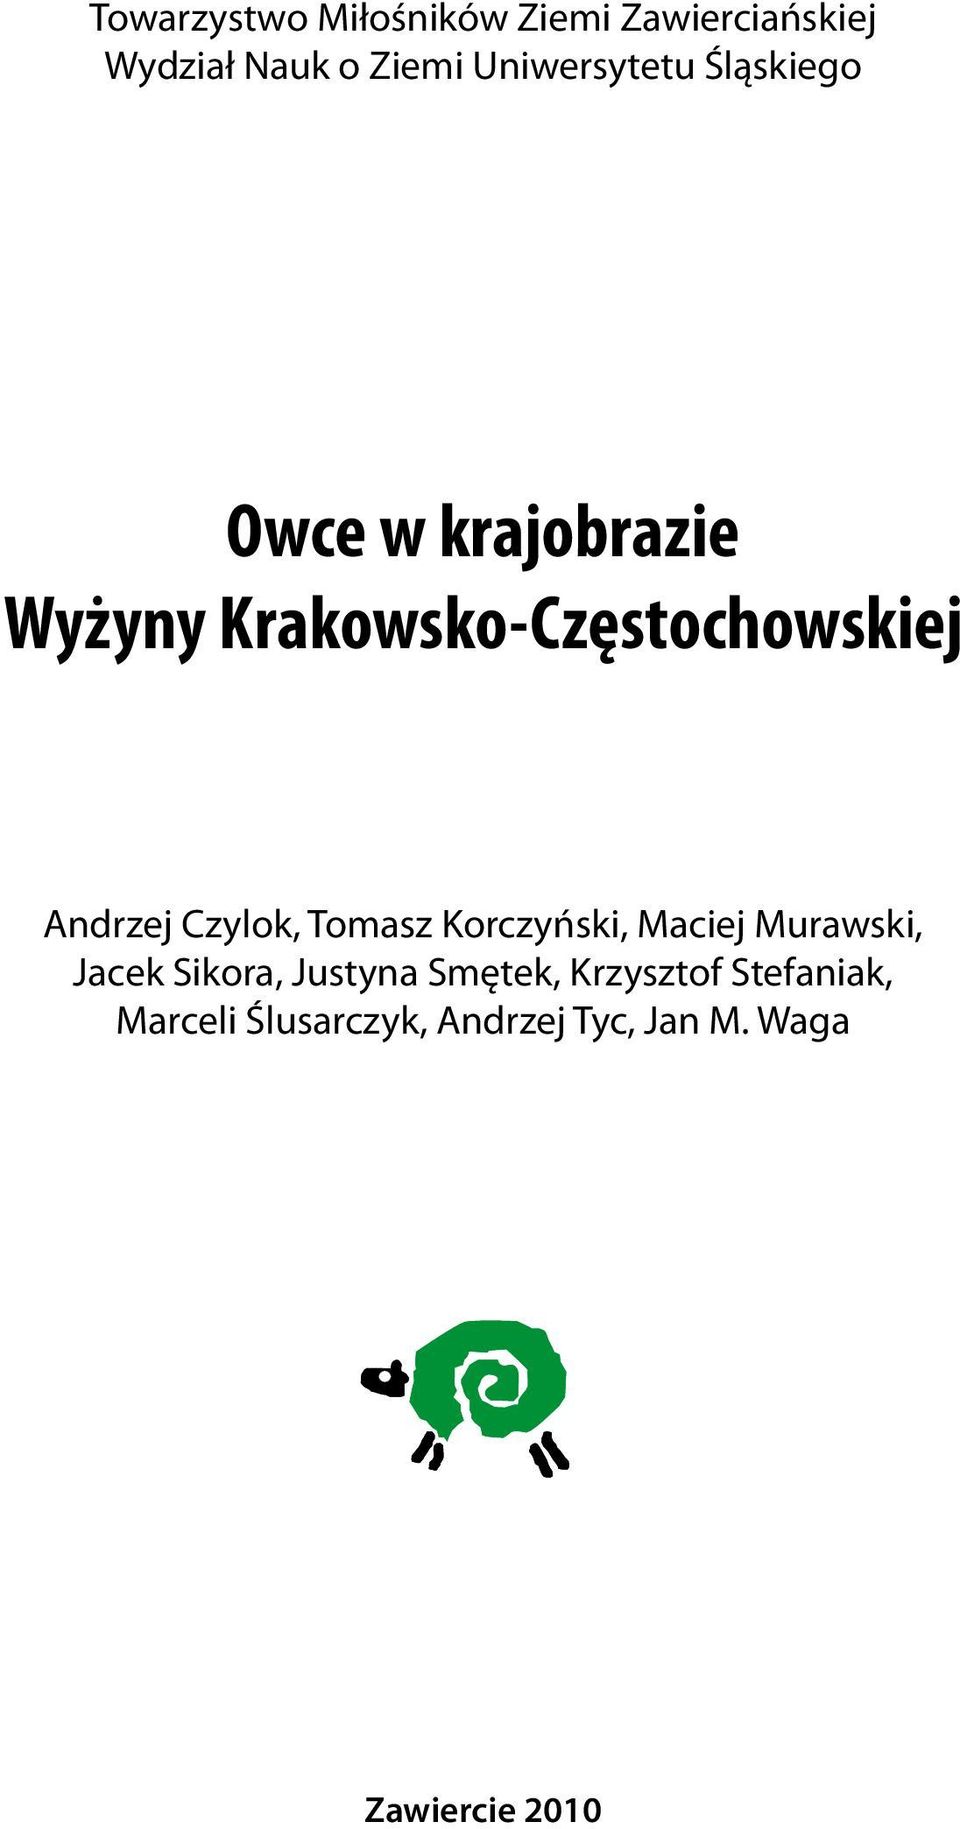 Andrzej Czylok, Tomasz Korczyński, Maciej Murawski, Jacek Sikora, Justyna